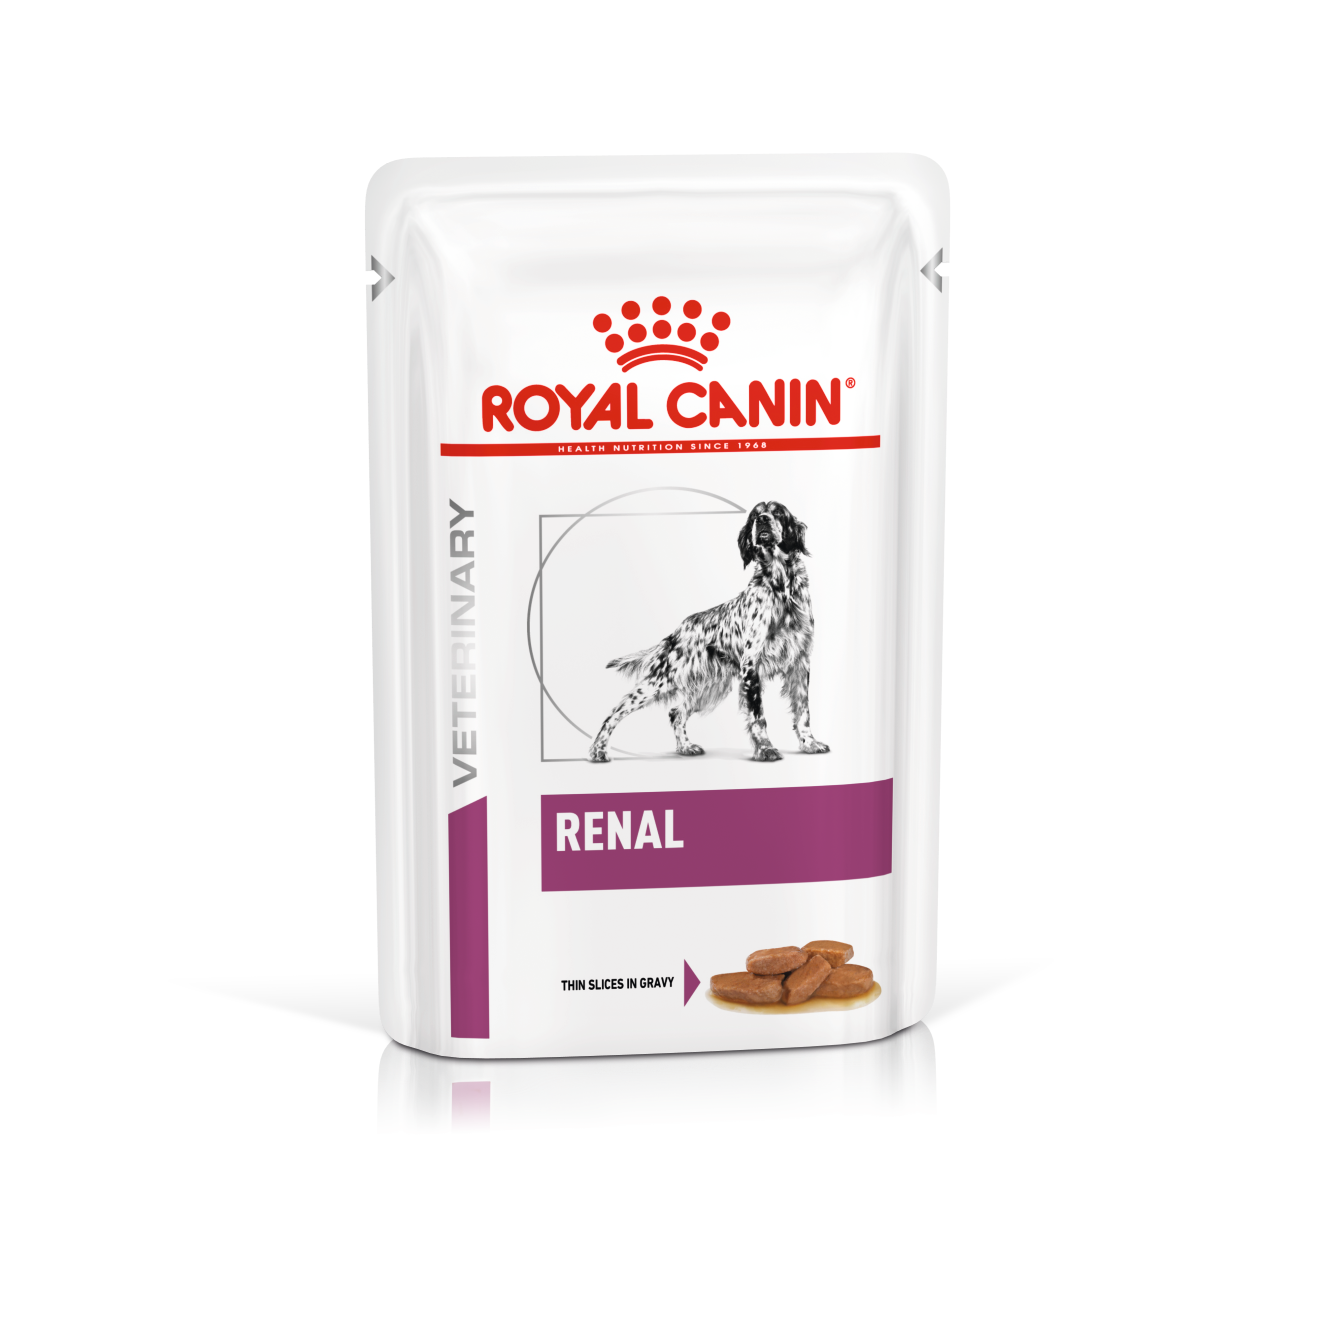 Royal Canin Renal hond  __ 4x 12 (48)x 100 gram Portie/maaltijdzakjes